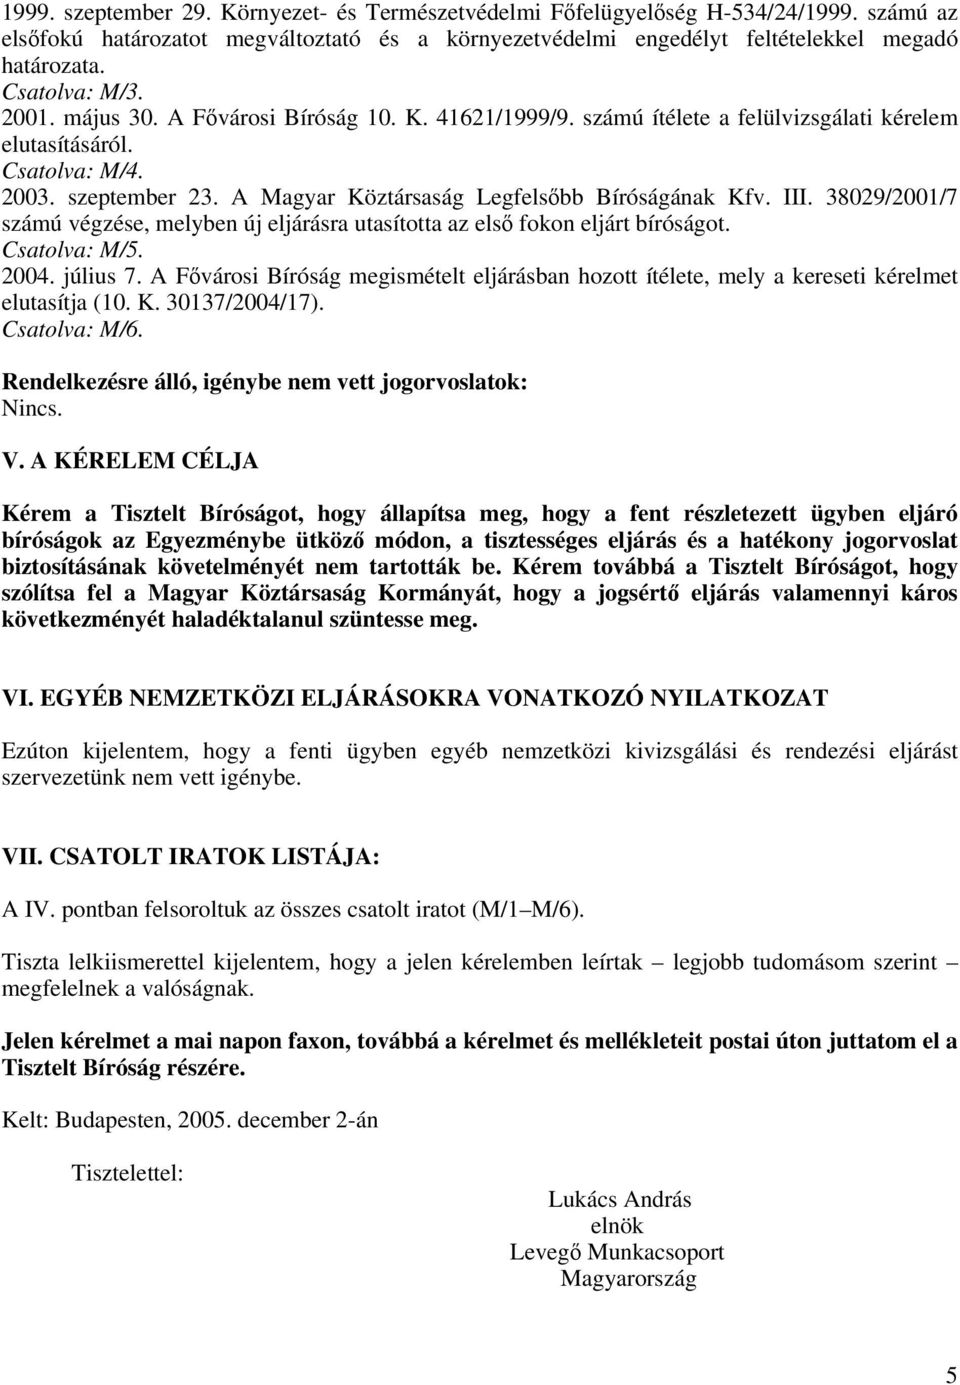 A Magyar Köztársaság Legfelsőbb Bíróságának Kfv. III. 38029/2001/7 számú végzése, melyben új eljárásra utasította az első fokon eljárt bíróságot. Csatolva: M/5. 2004. július 7.